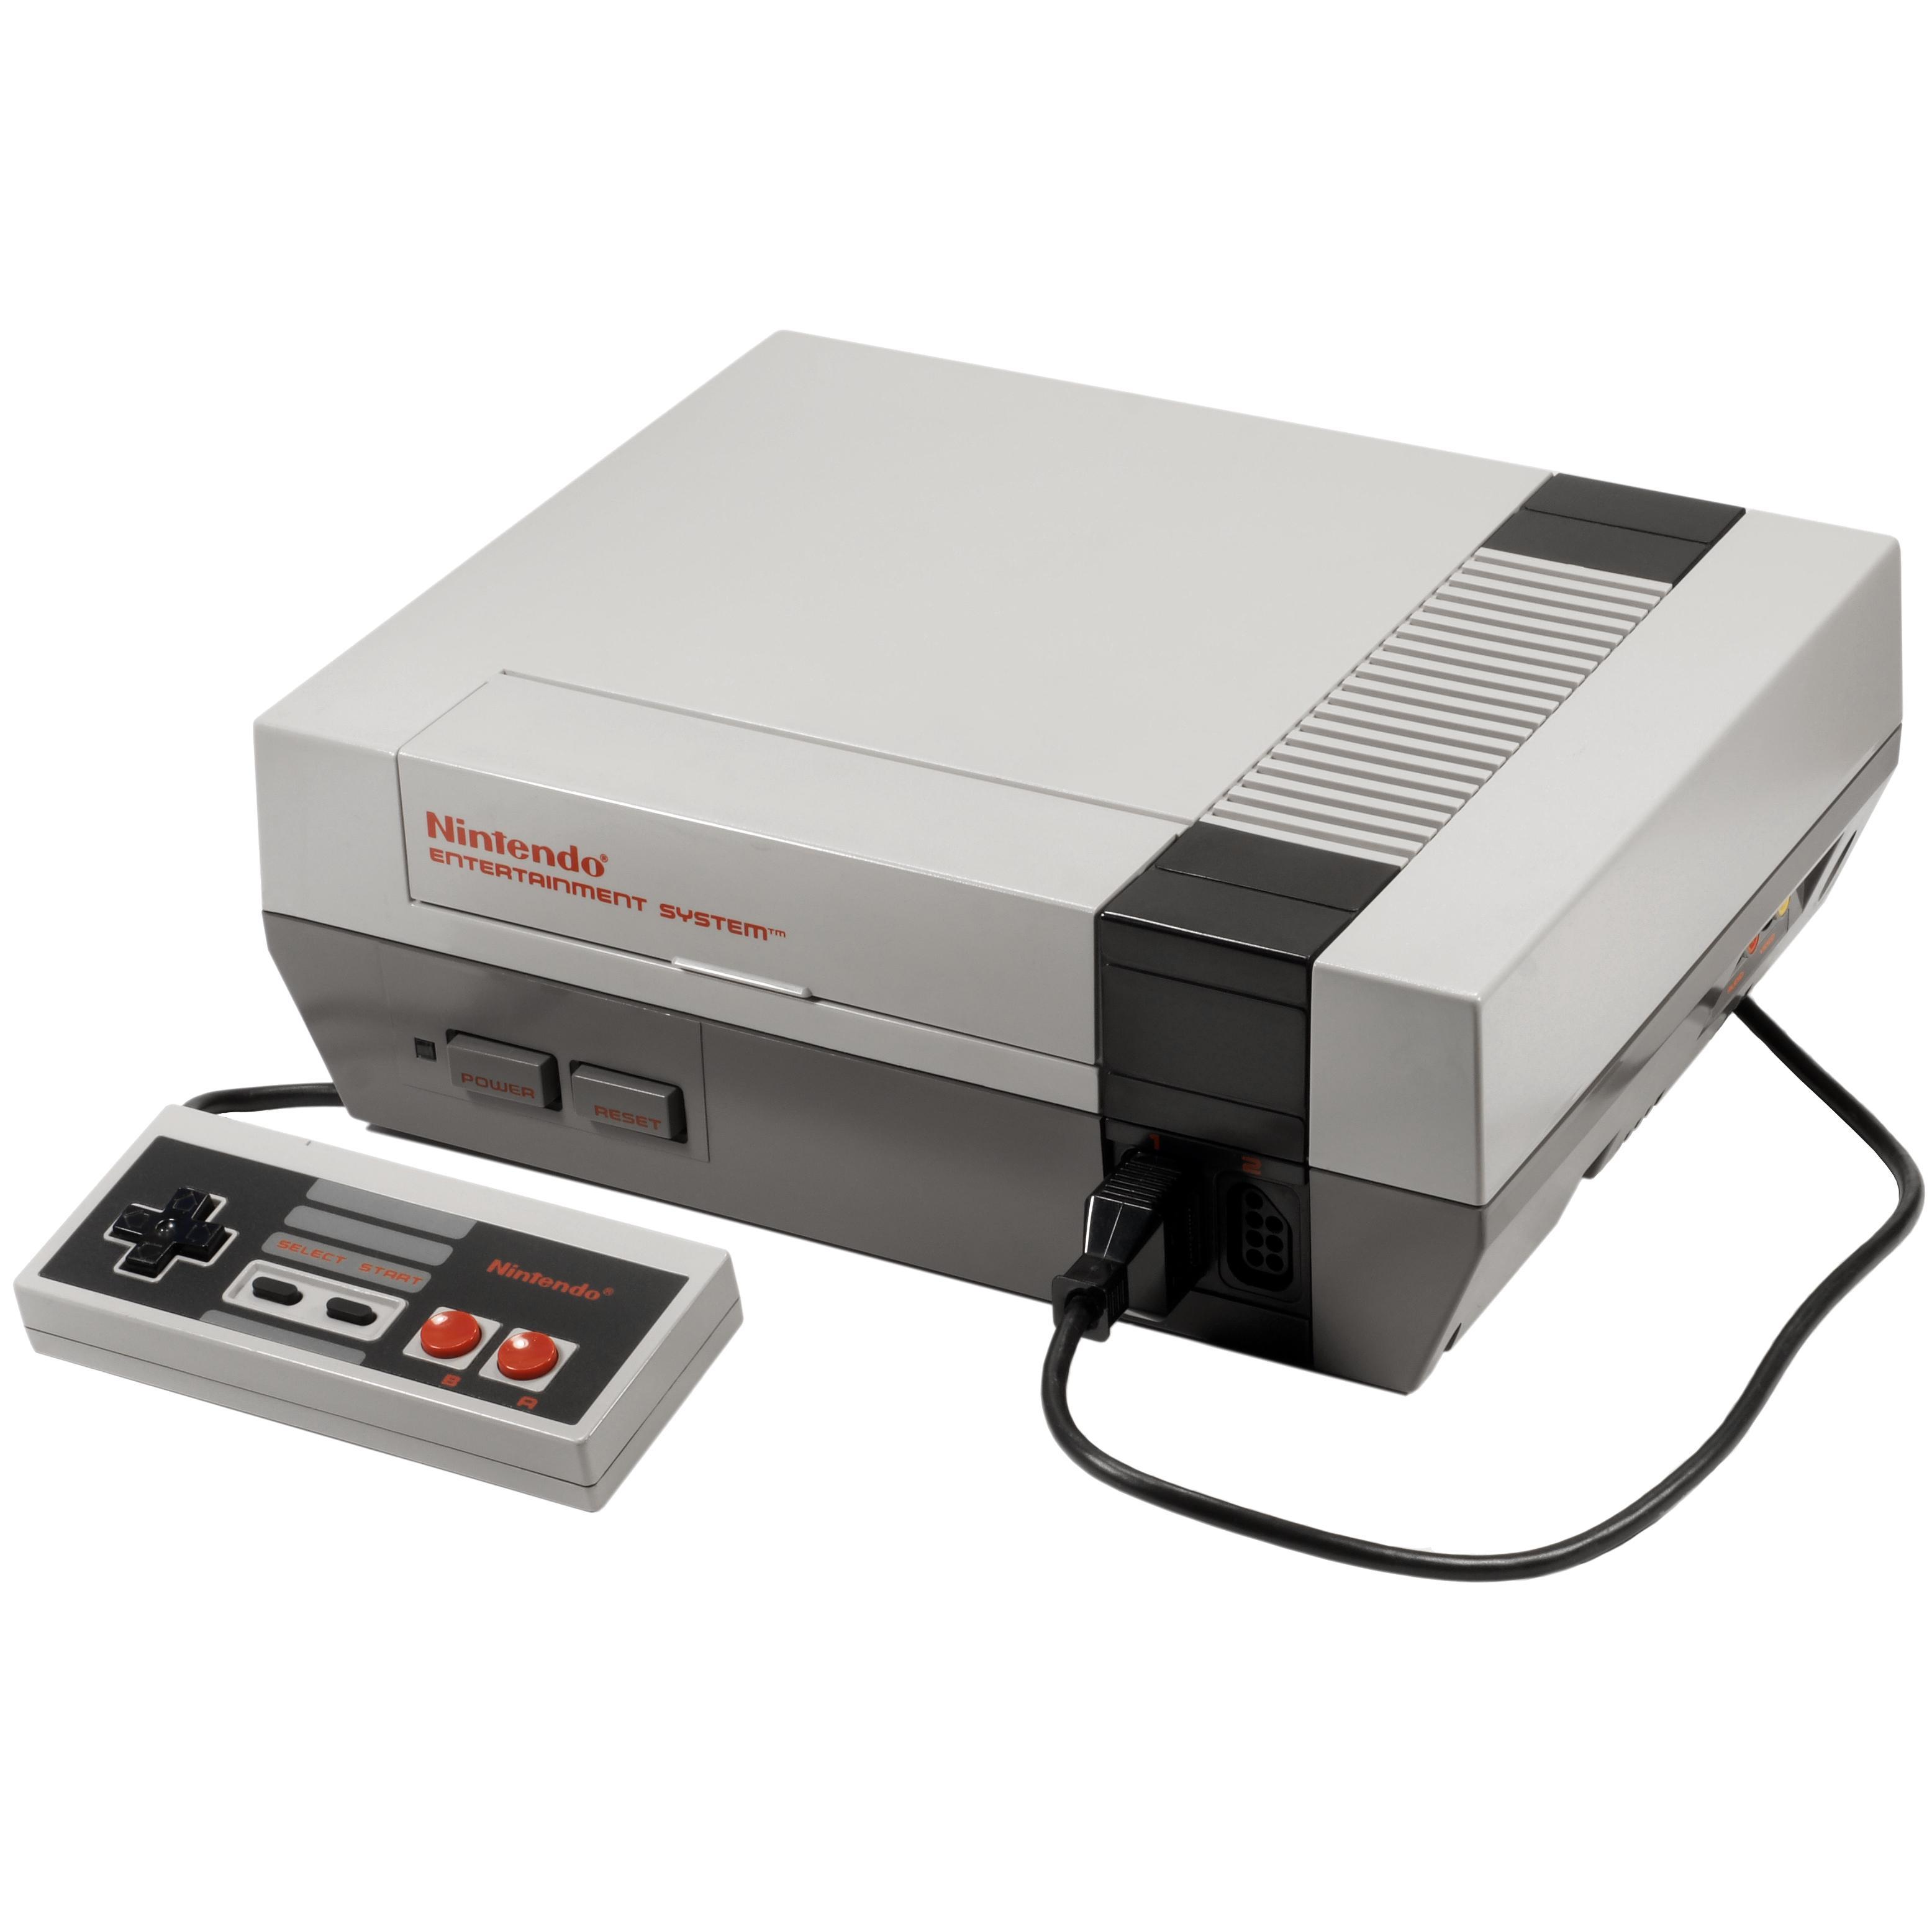 Originalen: Golf-spillet kom først ut til Nintendos første konsoll, NES.